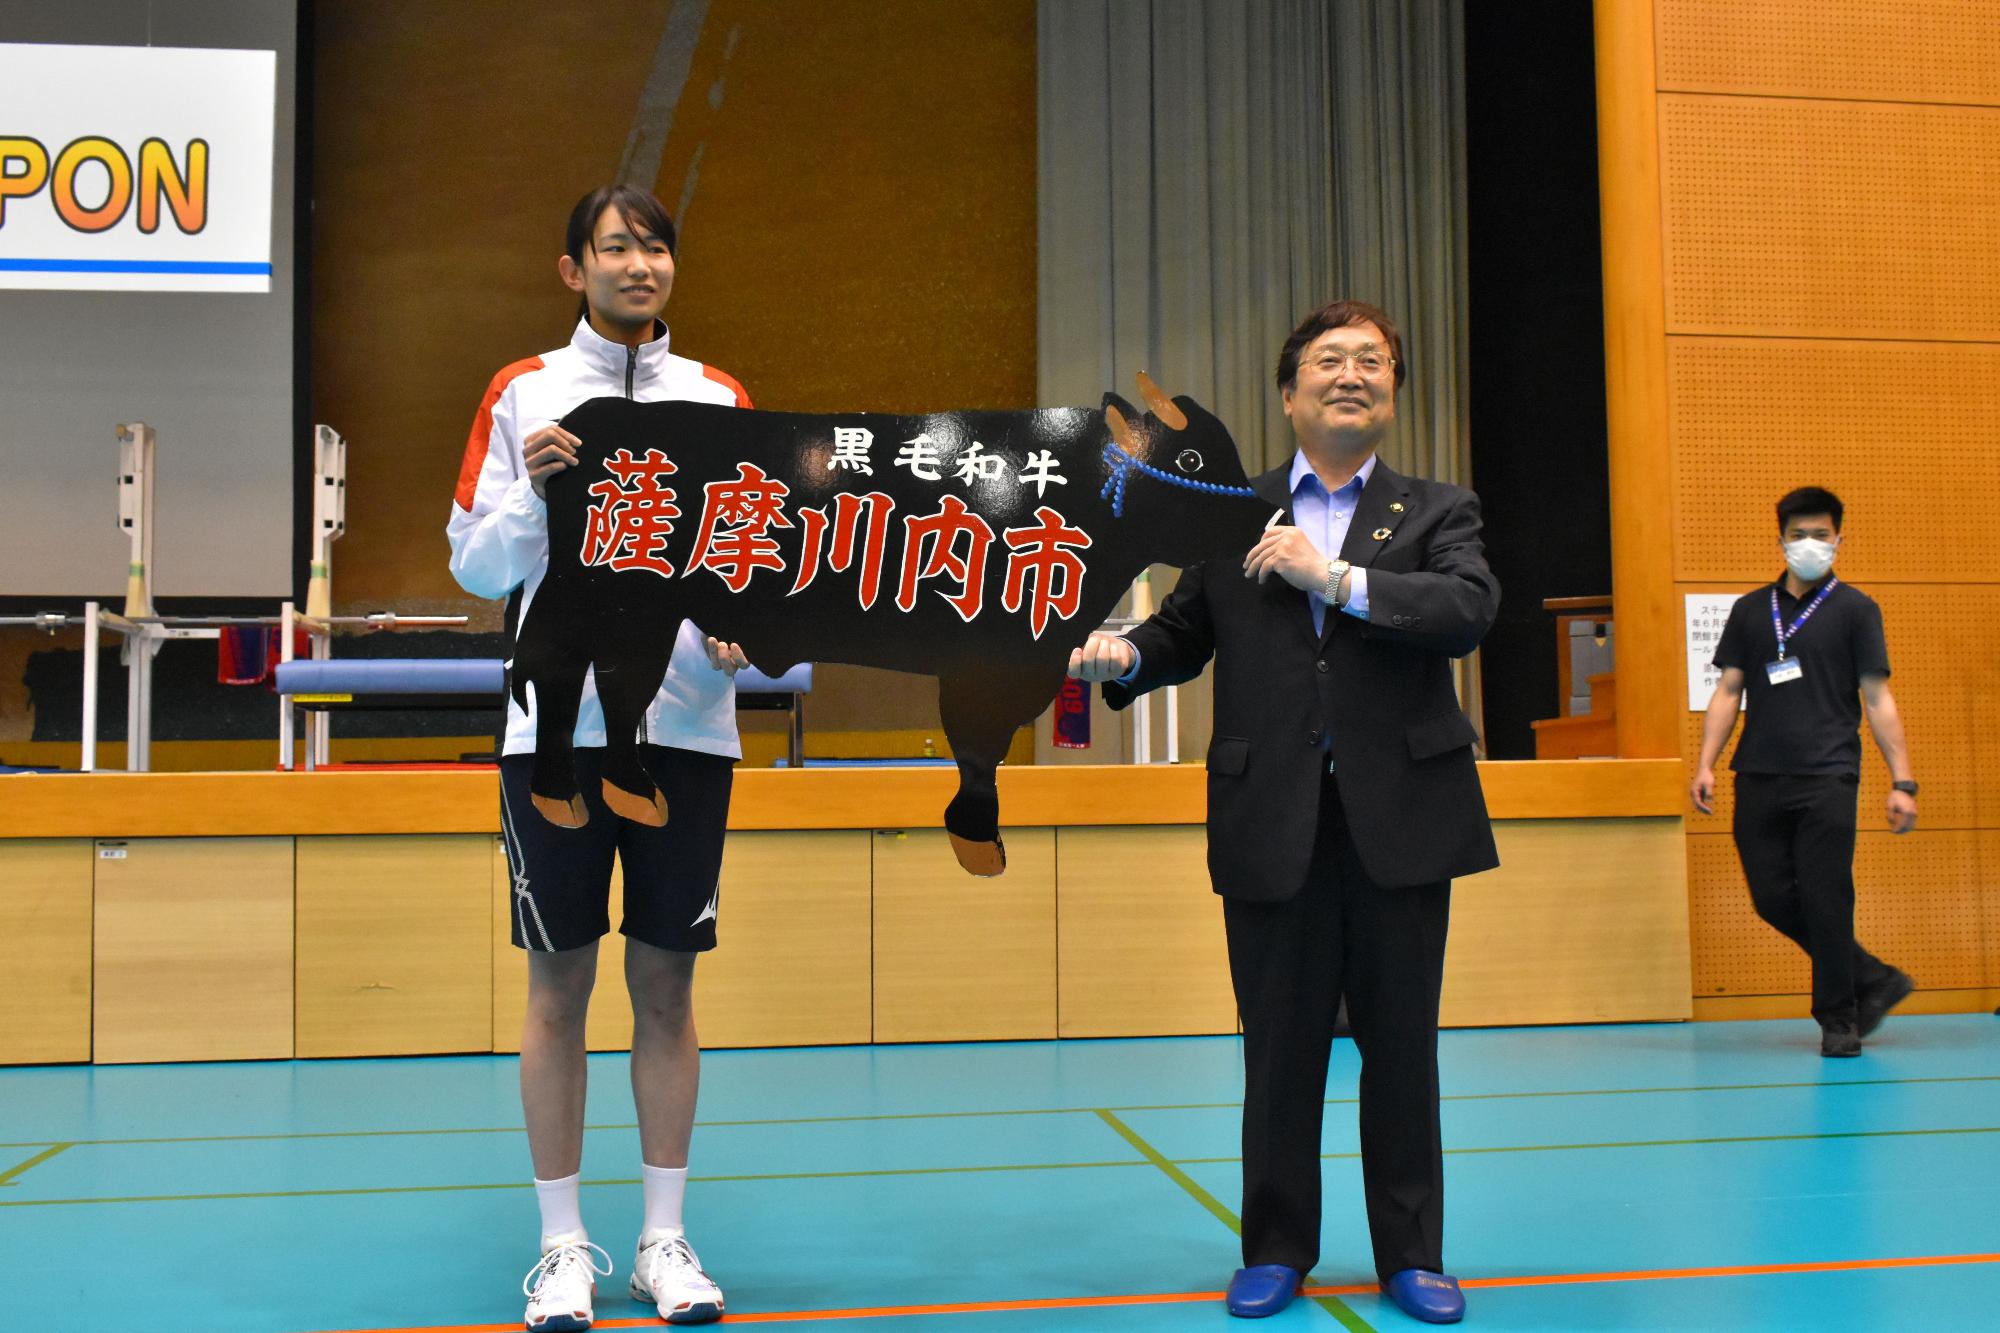 黒毛和牛、薩摩川内市と書かれた黒い牛の形の目録を掲げている、市長と女子バレーボール日本代表チームのメンバーの写真